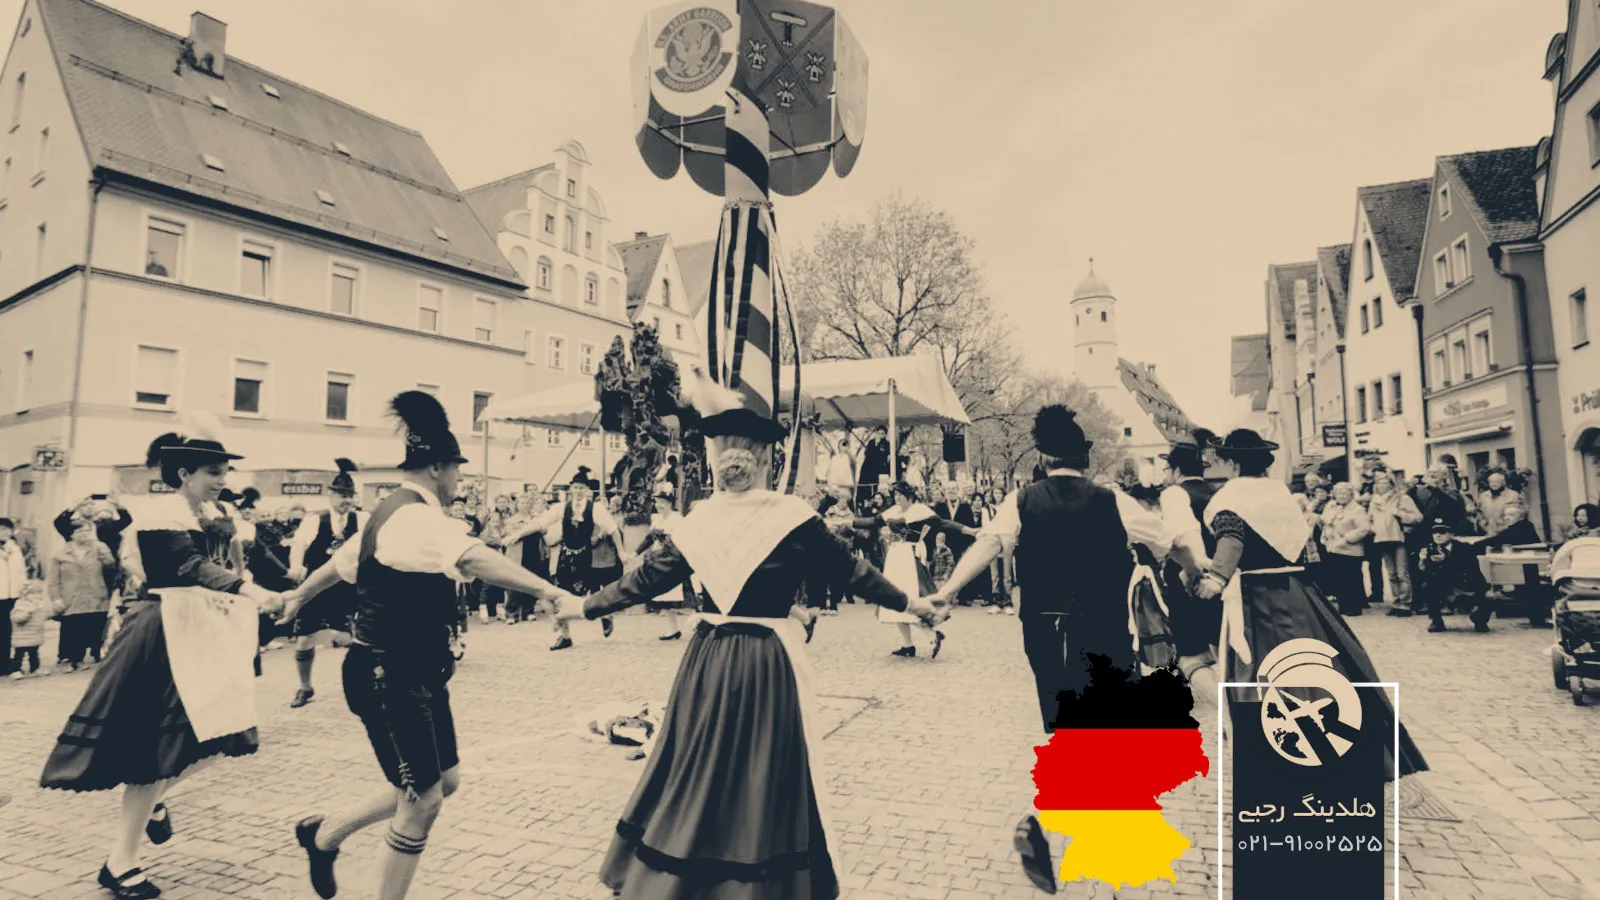 آلمانی‌ها در آینه فرهنگ: راهنمایی برای فهم بهتر آداب و رسوم آن‌ها